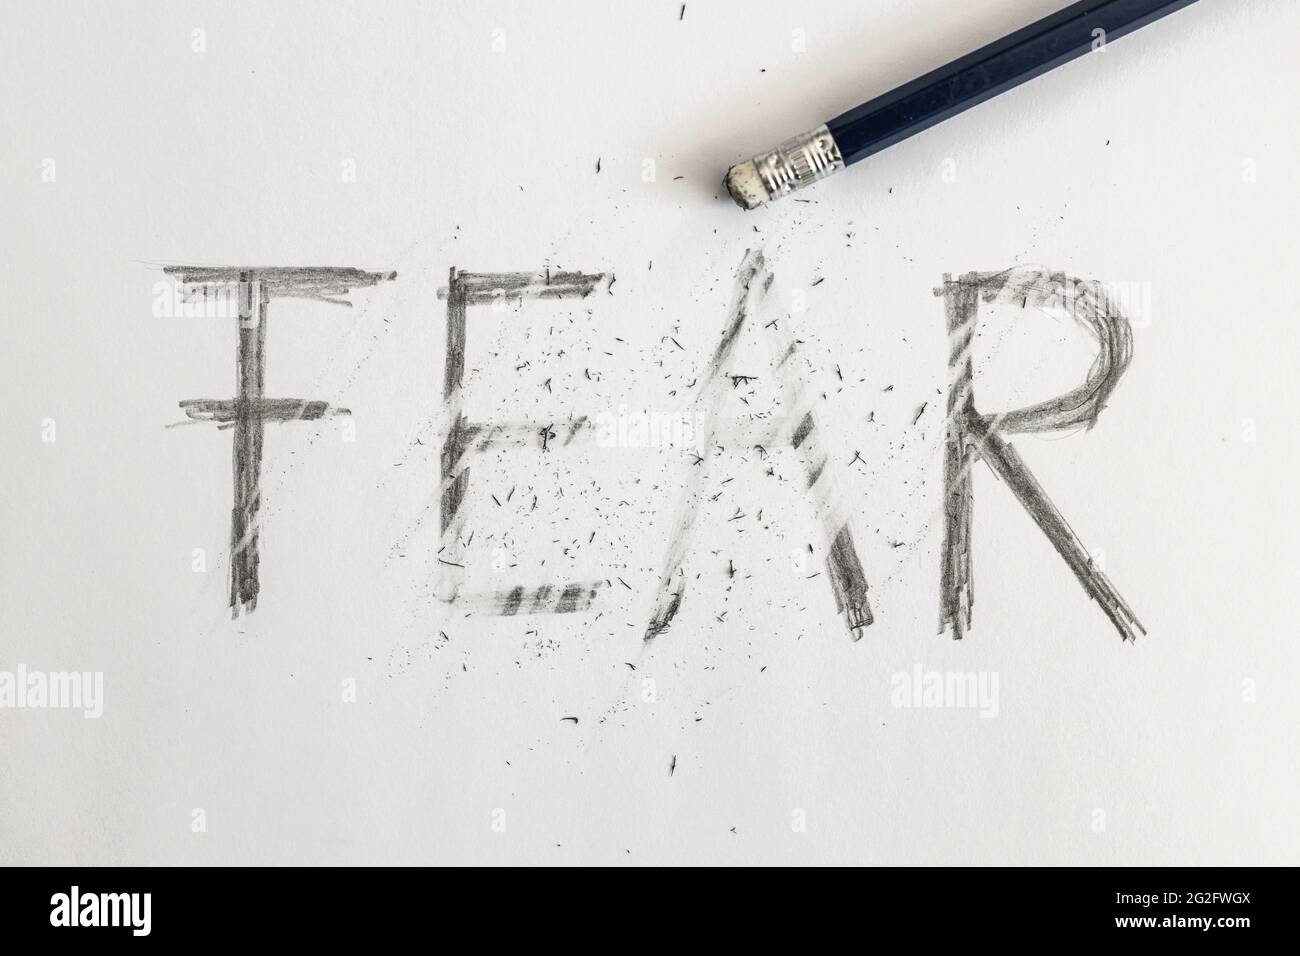 Effacer la peur. Peur écrite sur papier blanc avec un crayon, effacée avec une gomme. Symbolique pour surmonter la peur ou traiter la peur. Banque D'Images